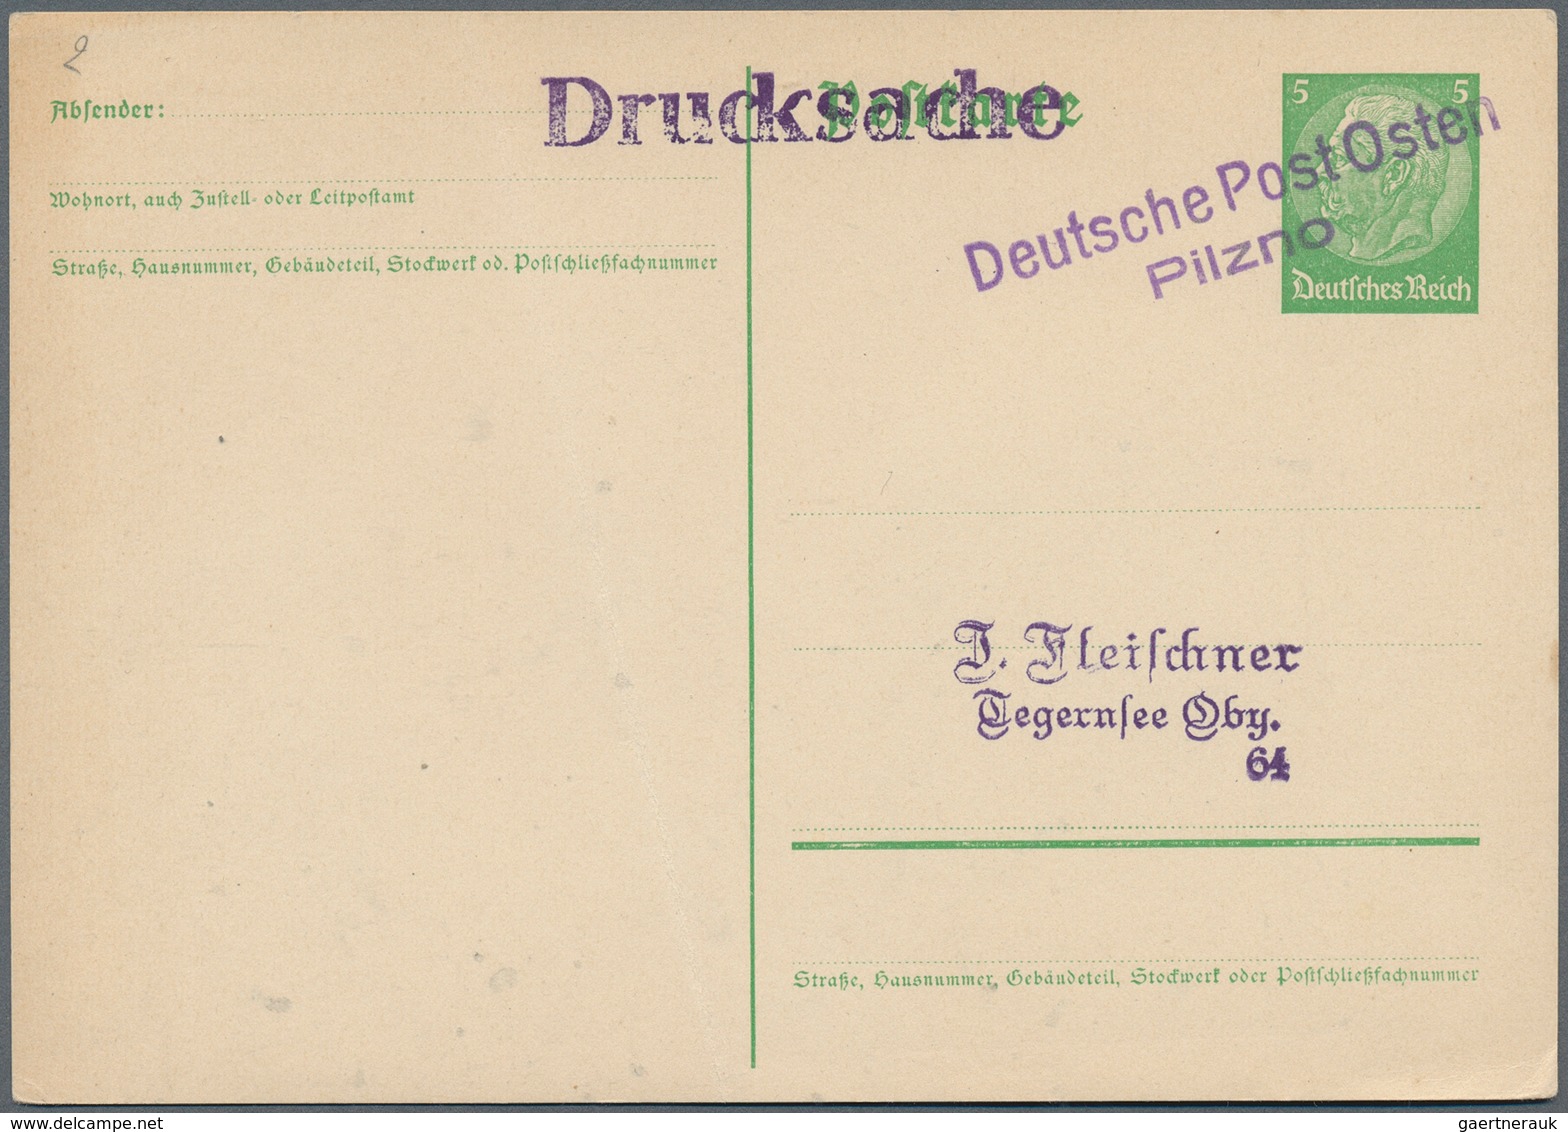 31007 Deutschland: 1850/1960 (ca.), vielseitiger Bestand von ca. 530 Briefen, Karten und Ganzsachen, dabei